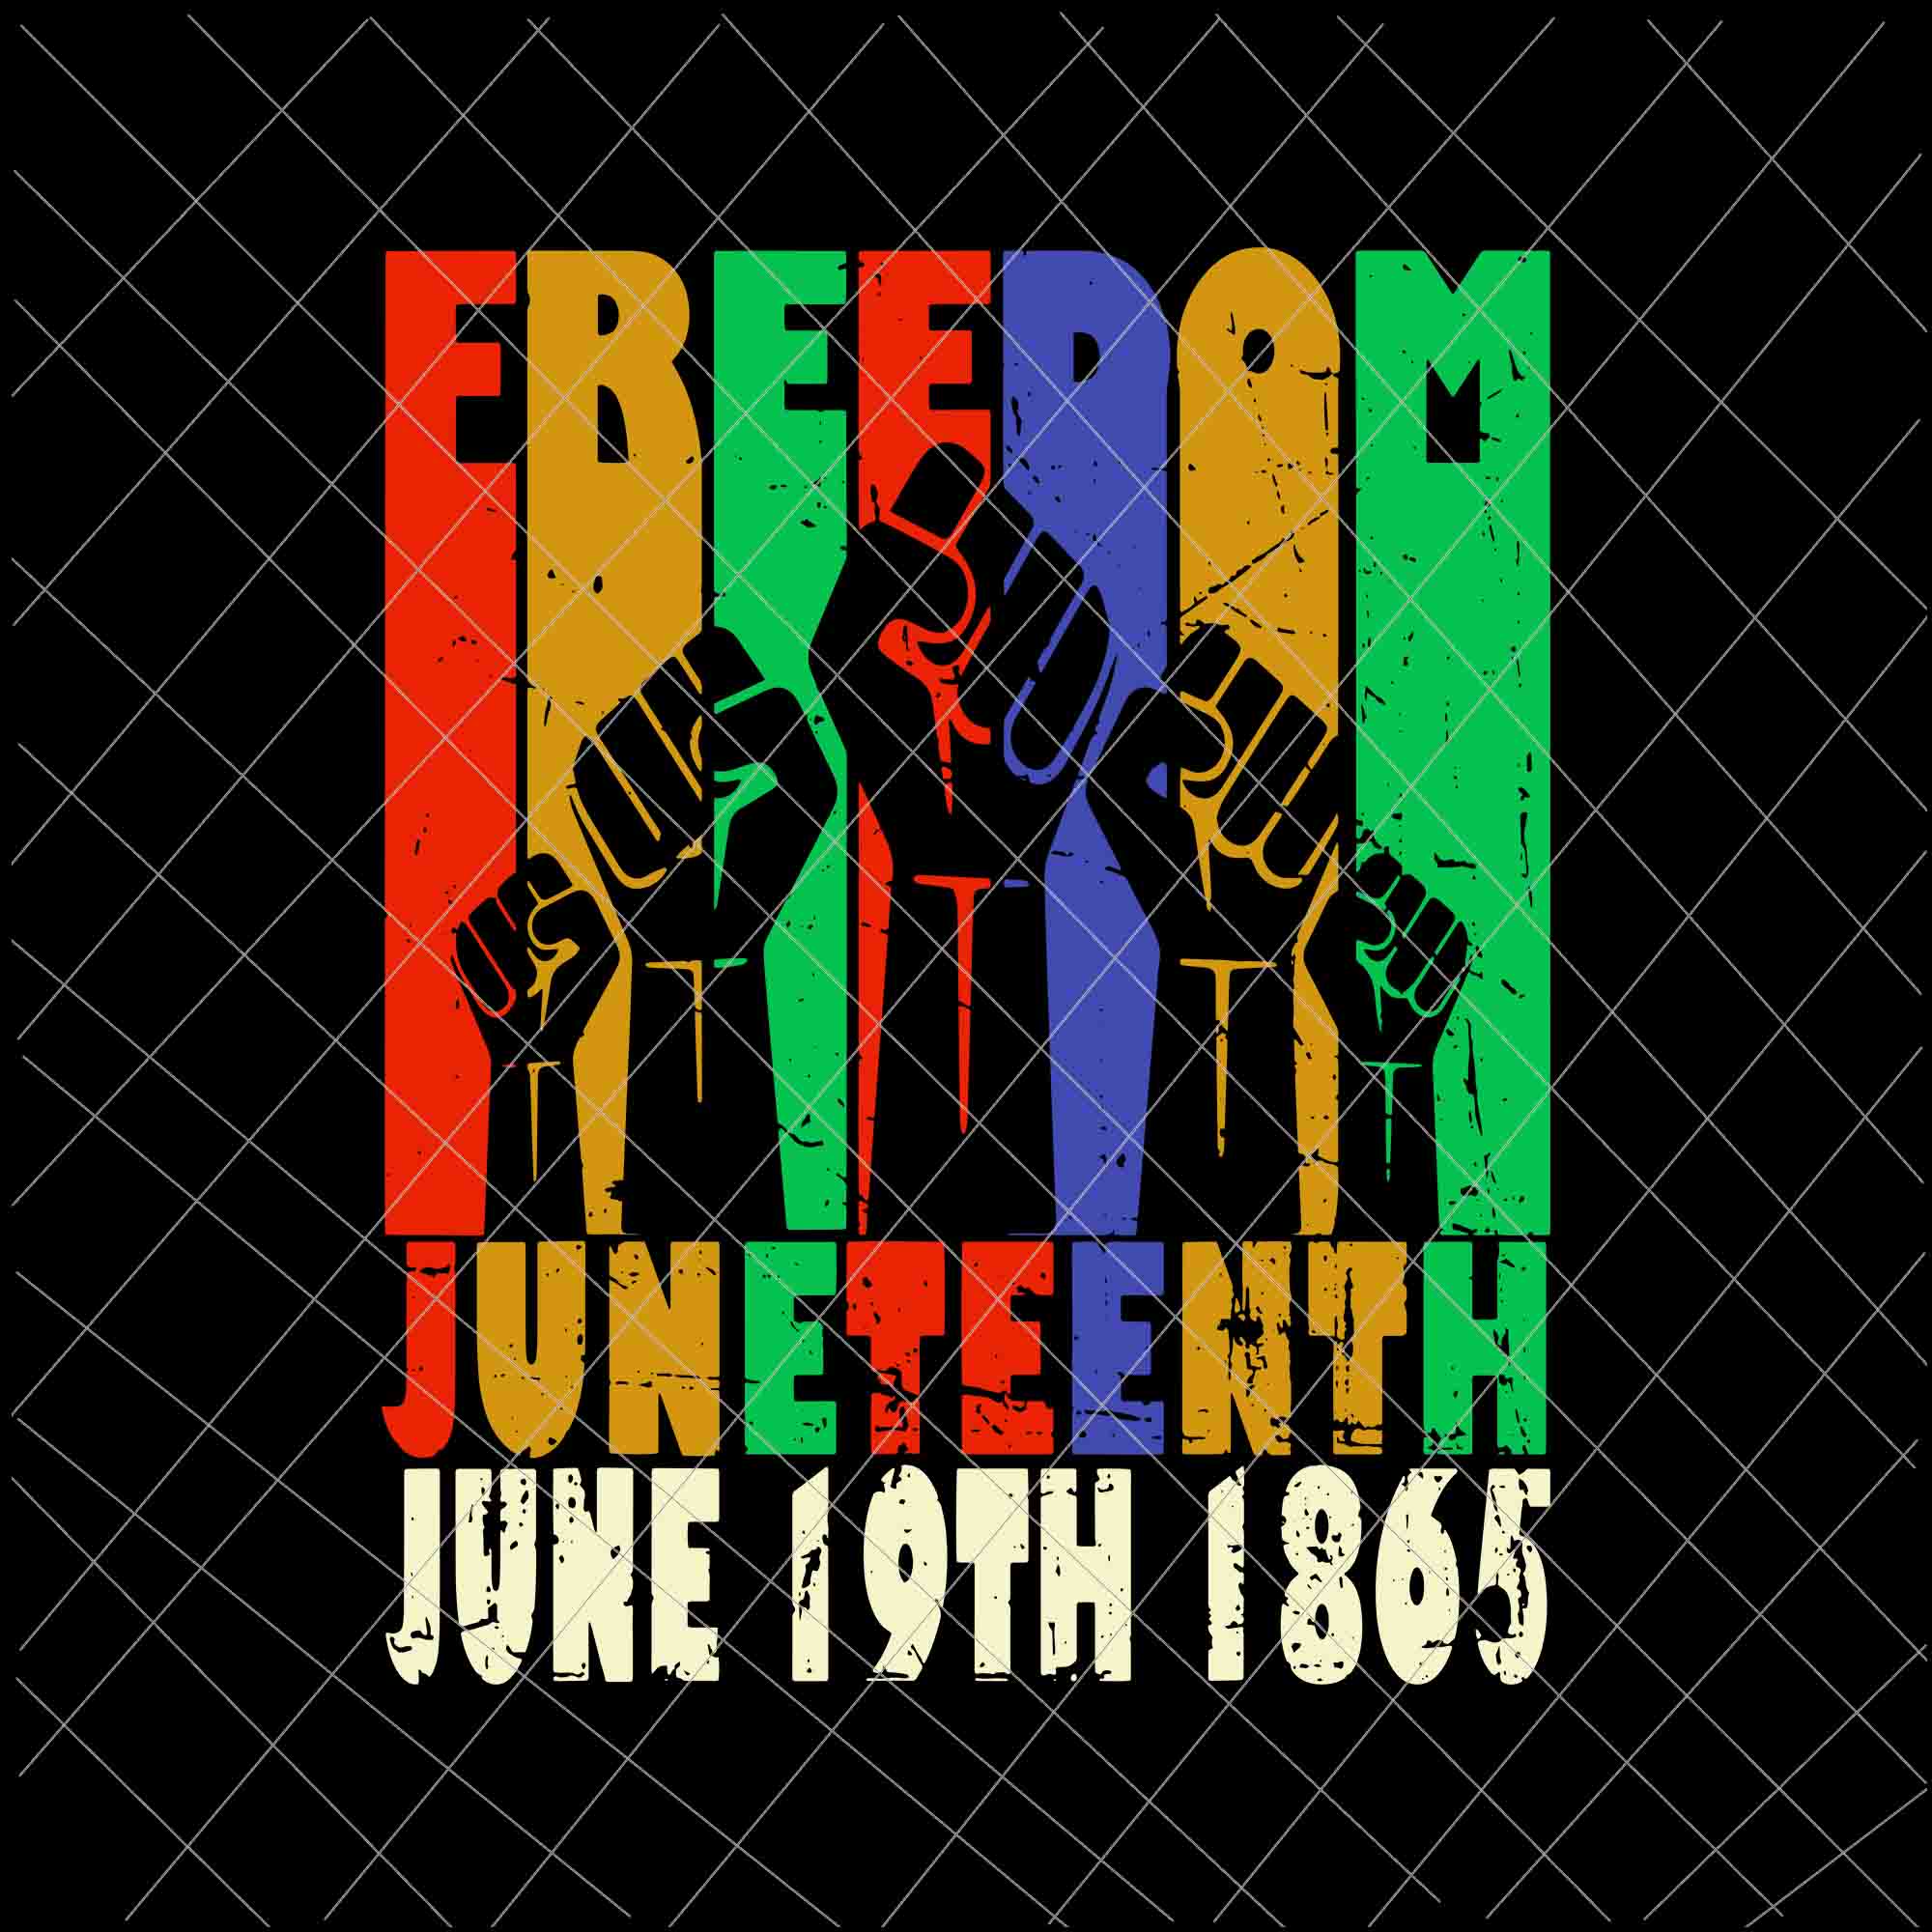 Vintage Black Freedom Day Svg, Juneteenth June 19th 1865 Svg, Black African Flag Pride Fist Svg, Indepedence Day Svg